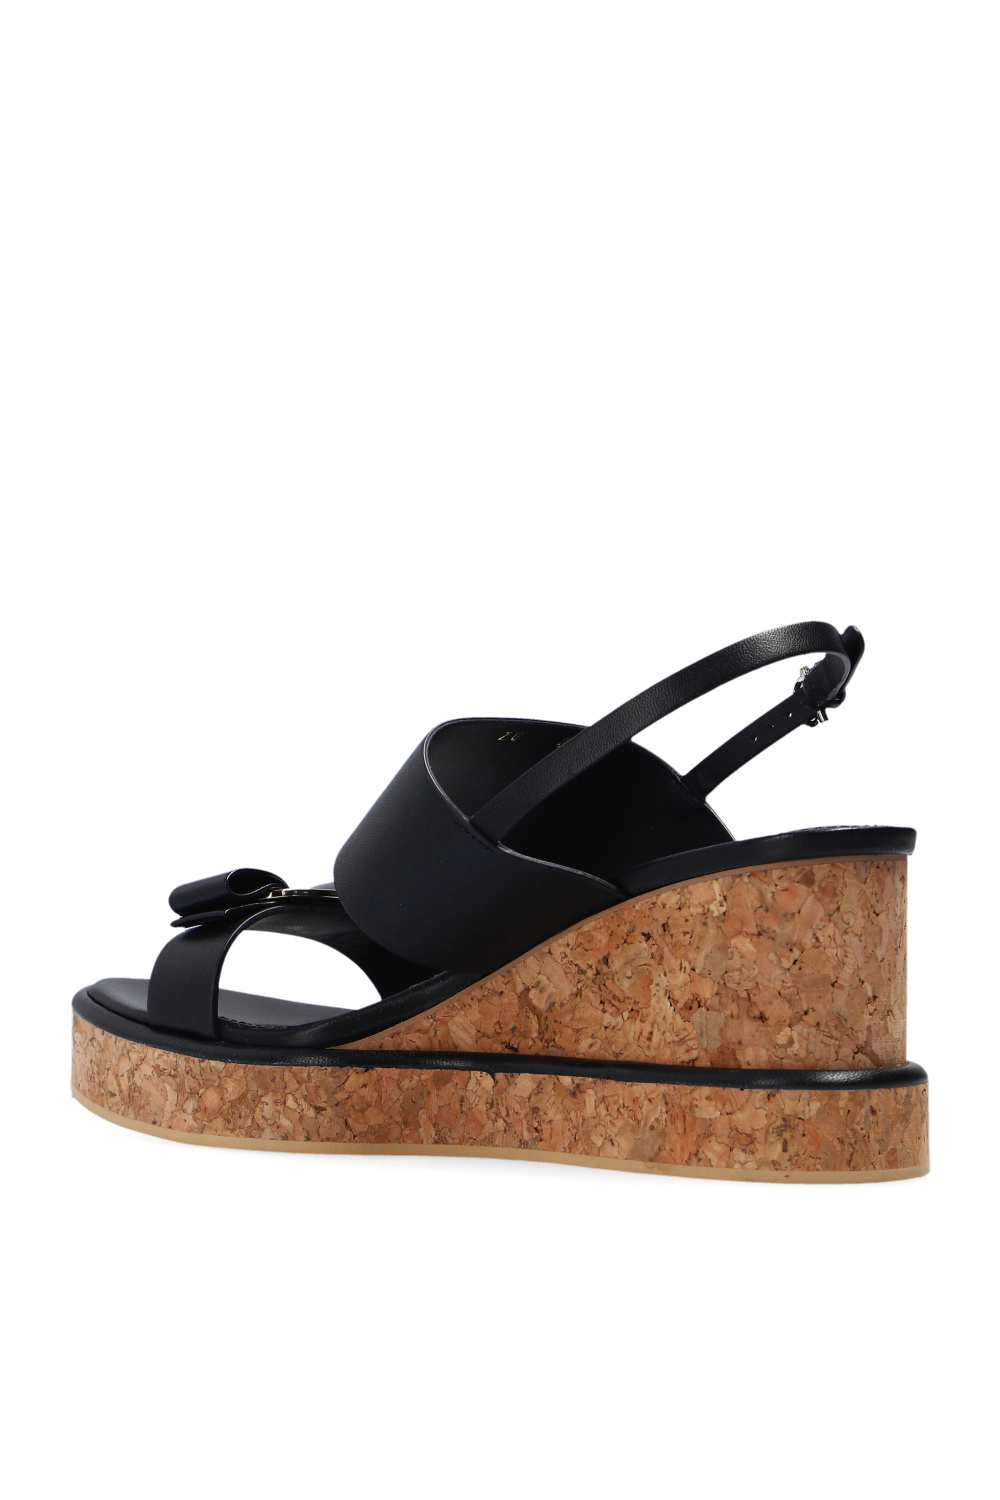 Salvatore Ferragamo ‘Giudith’ wedge sandals